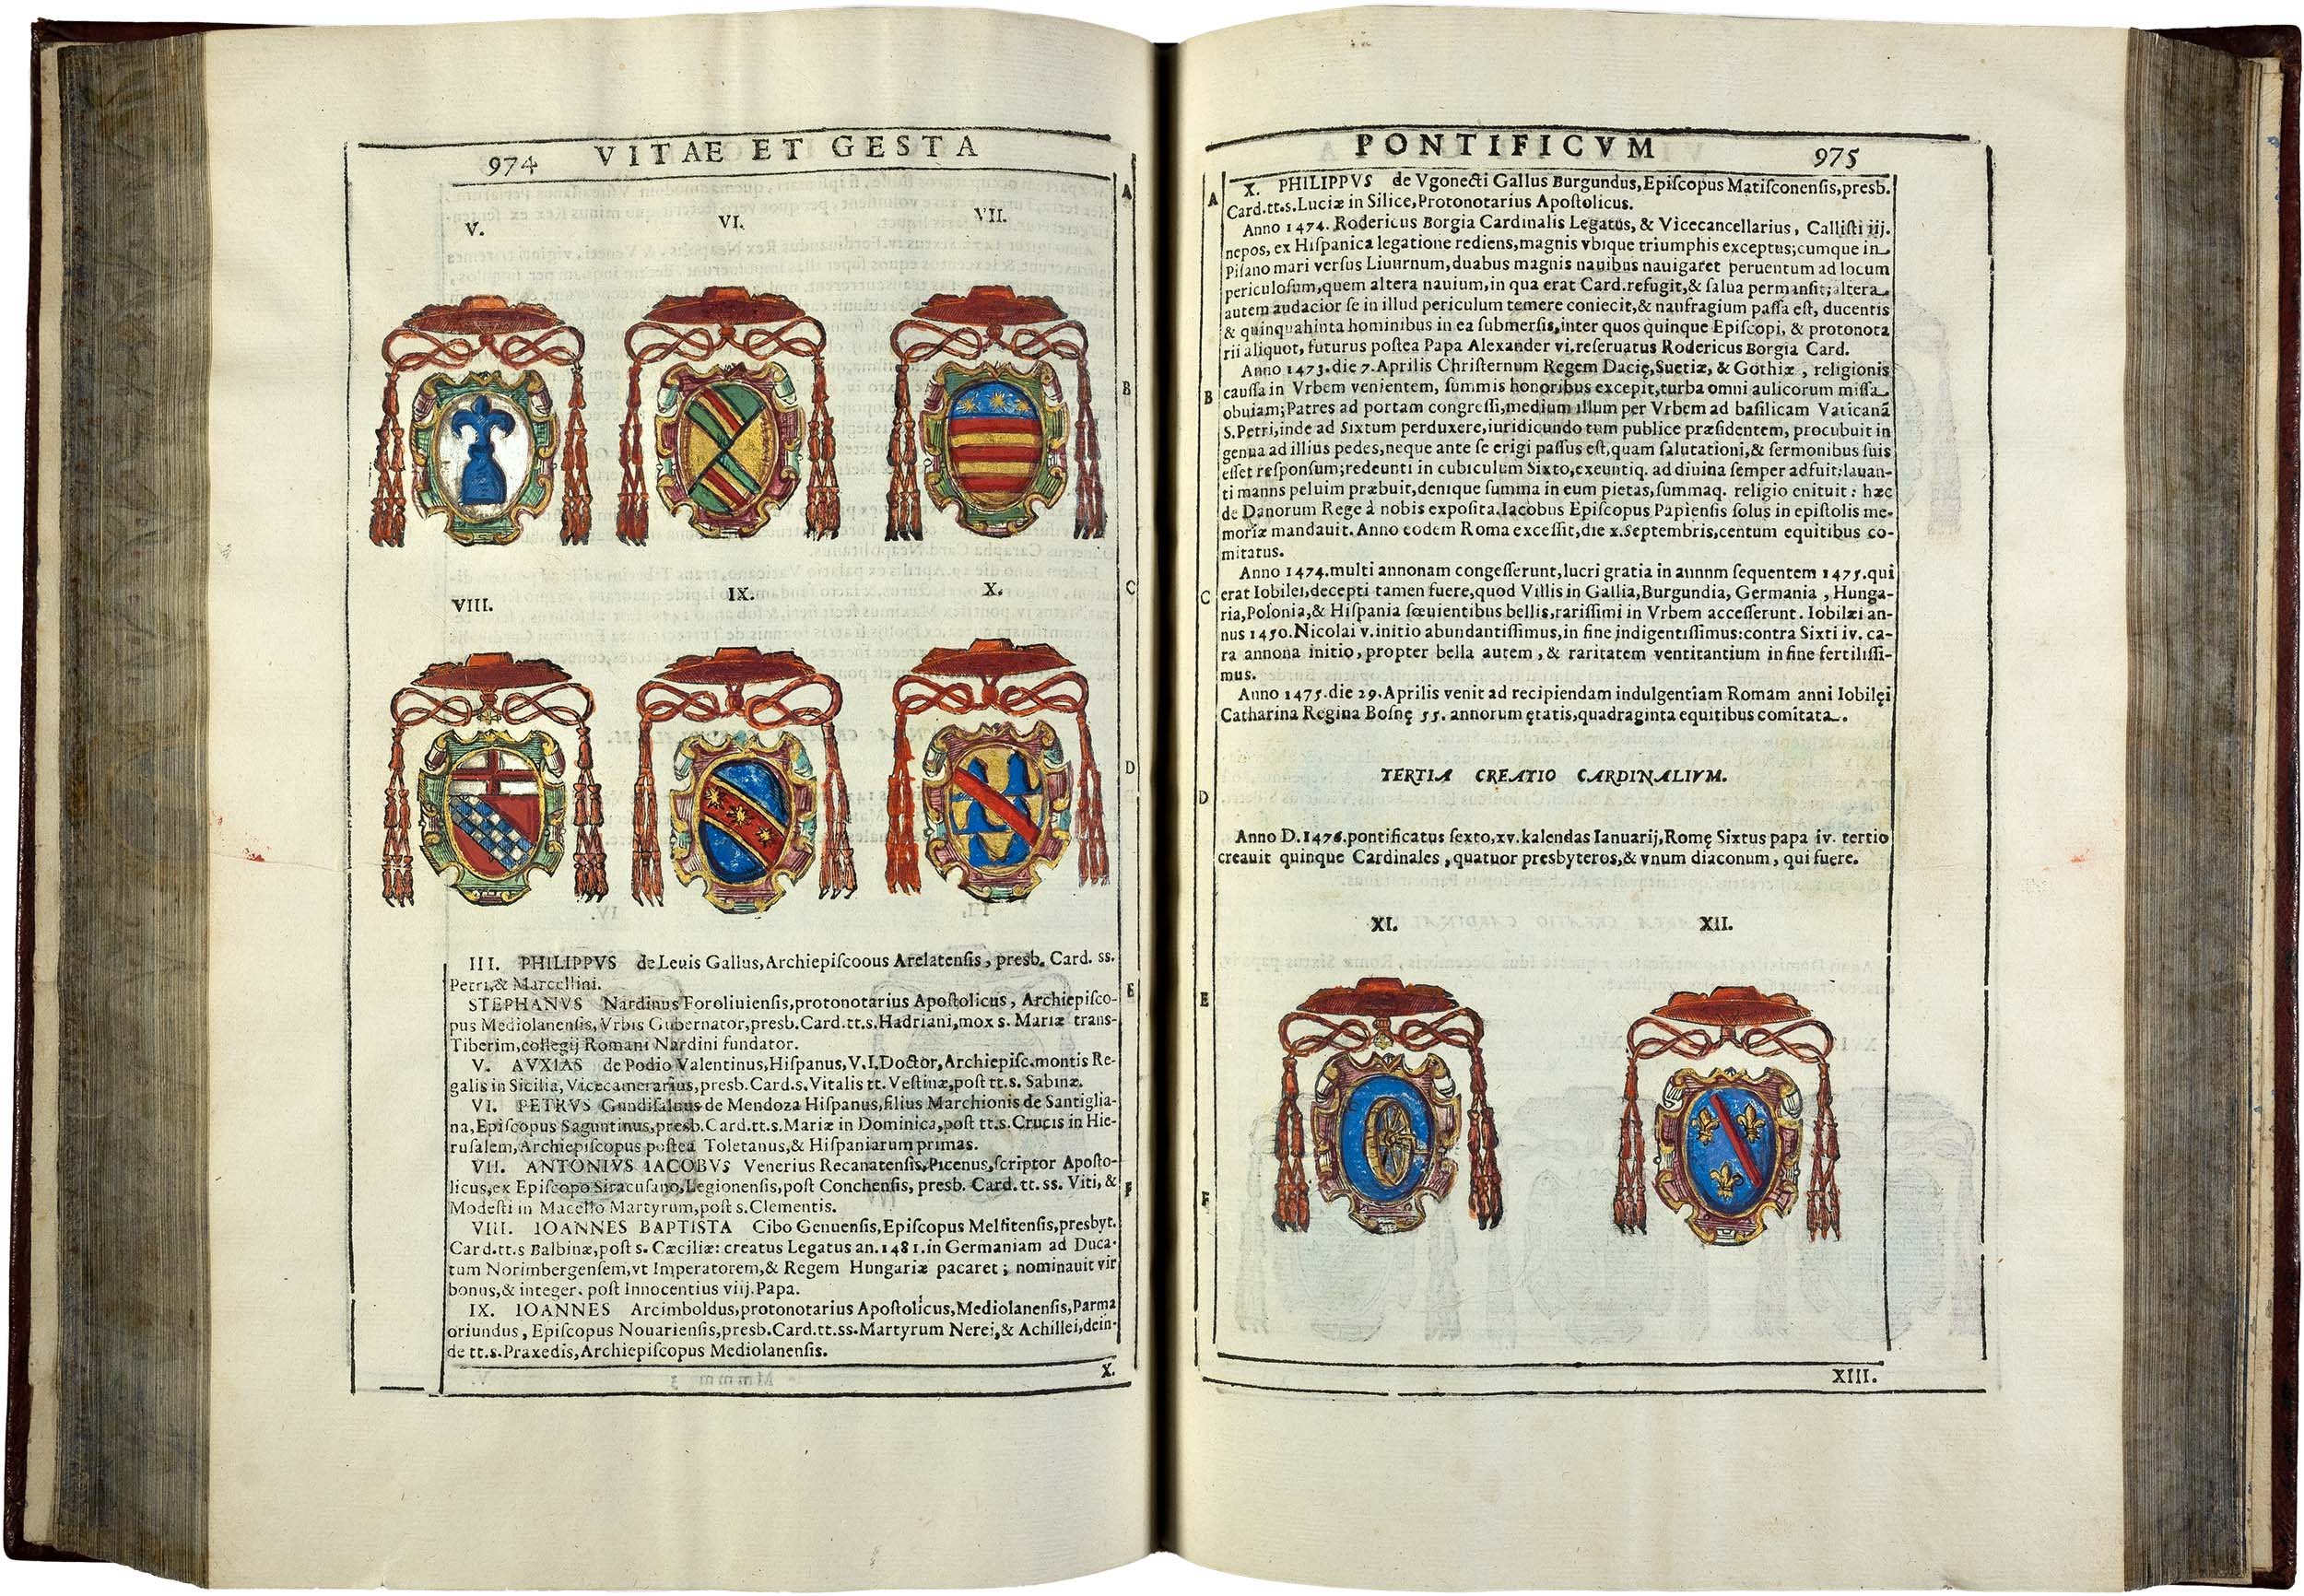 Ciaconius-Vitae-et-Gesta-1598-1601-pope-clement-viii-19.jpg